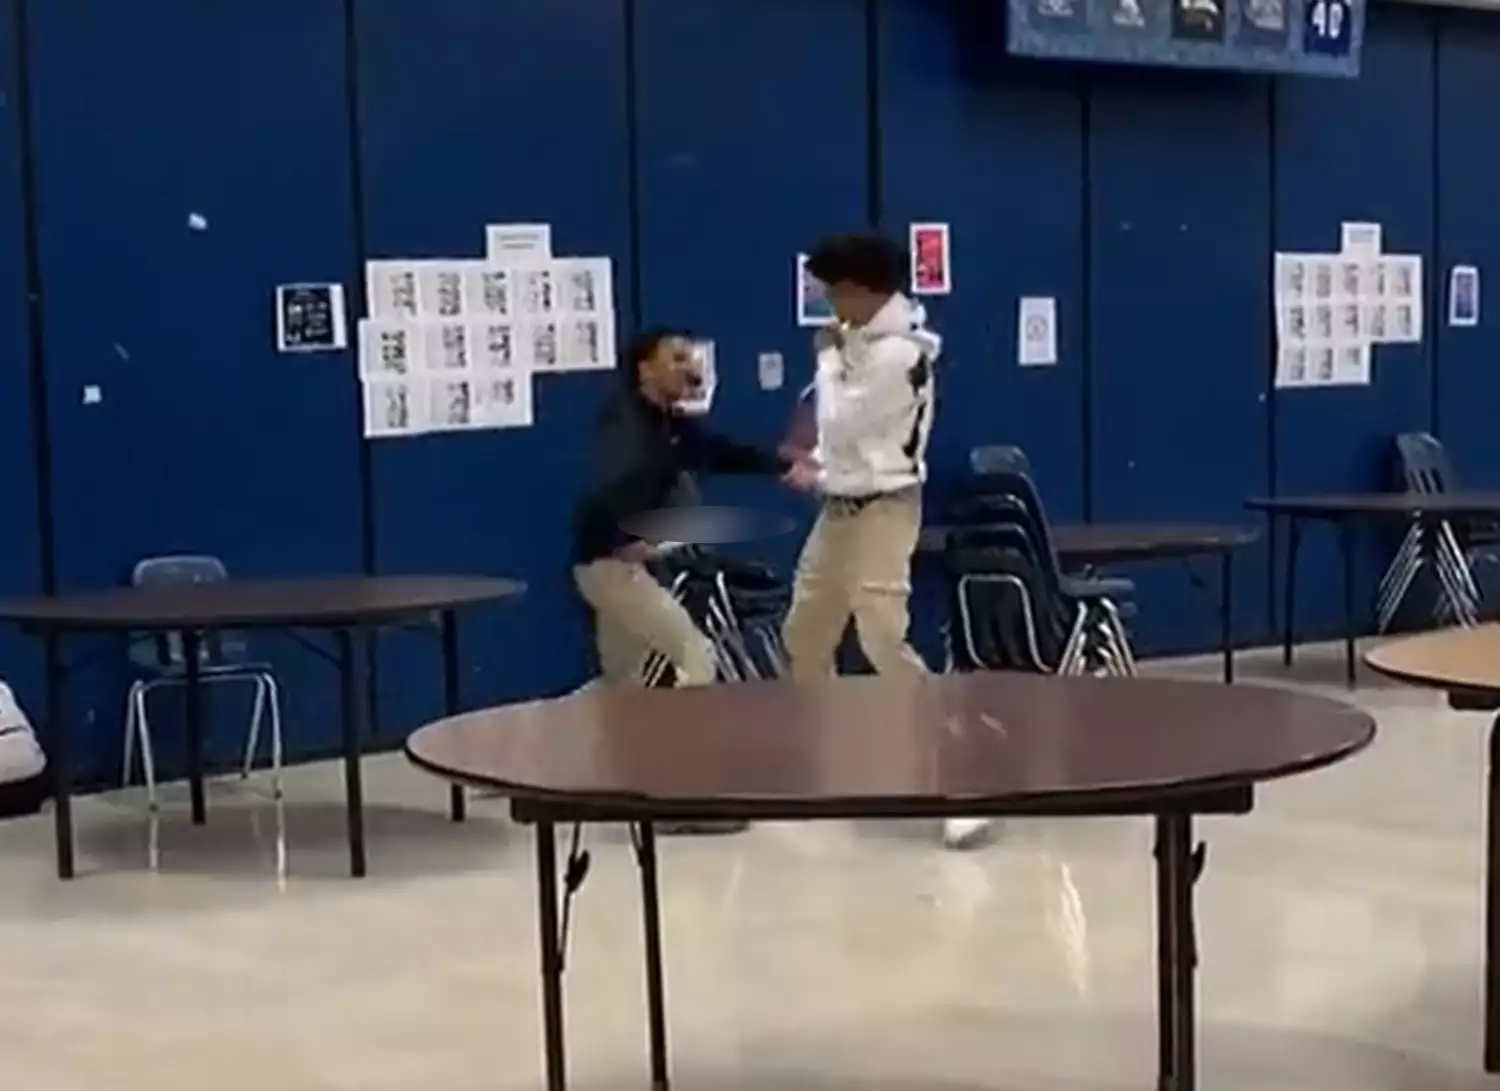 Οχάιο: Ανήλικος έβγαλε μαχαίρι και χτύπησε συμμαθητή του στο διάδρομο του σχολείου (βίντεο)